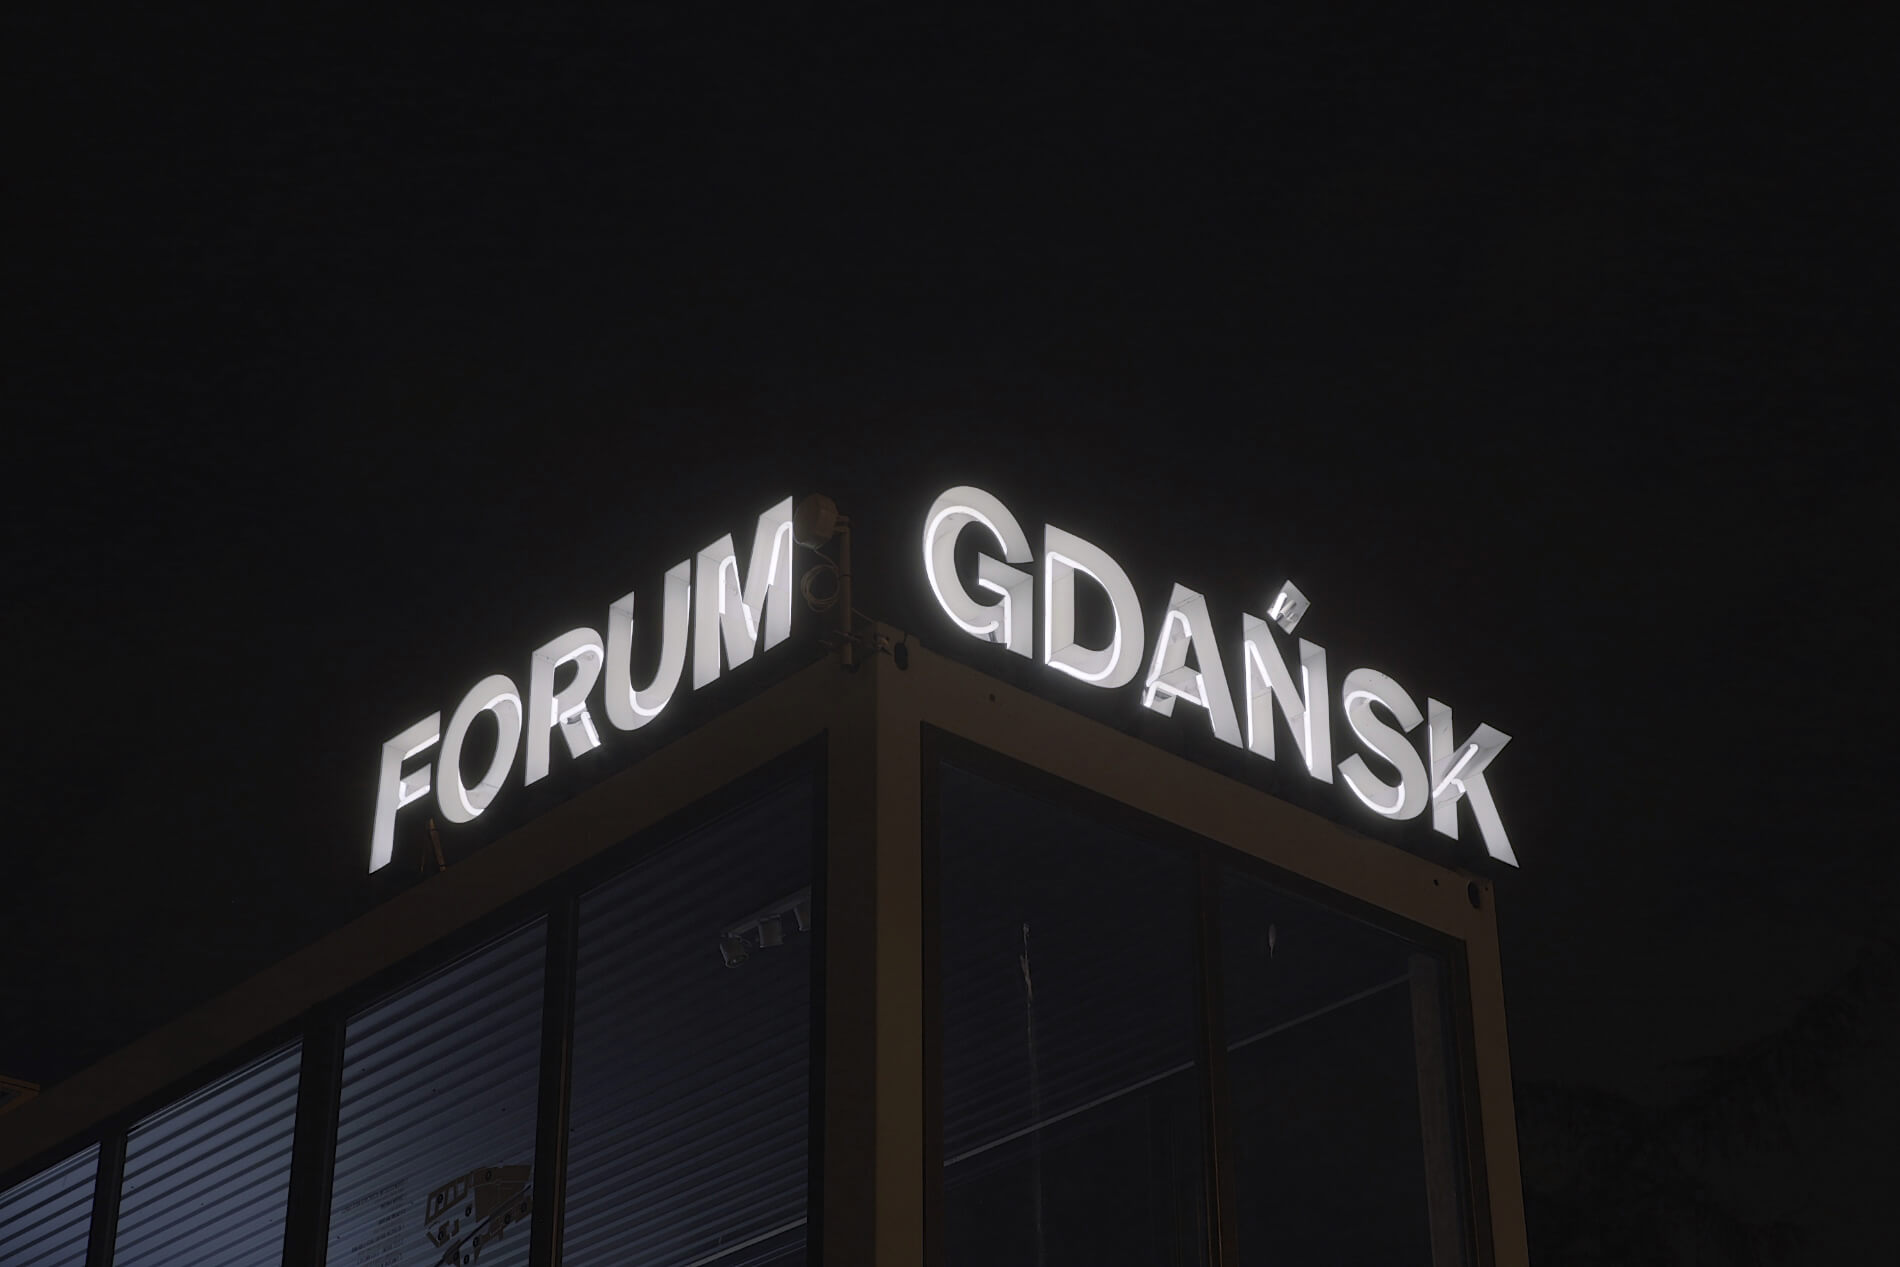 Informazioni sul forum di Danzica - Danzig Forum - lettere illuminate con un'insegna al neon, montata su un telaio, posta sul tetto dell'edificio